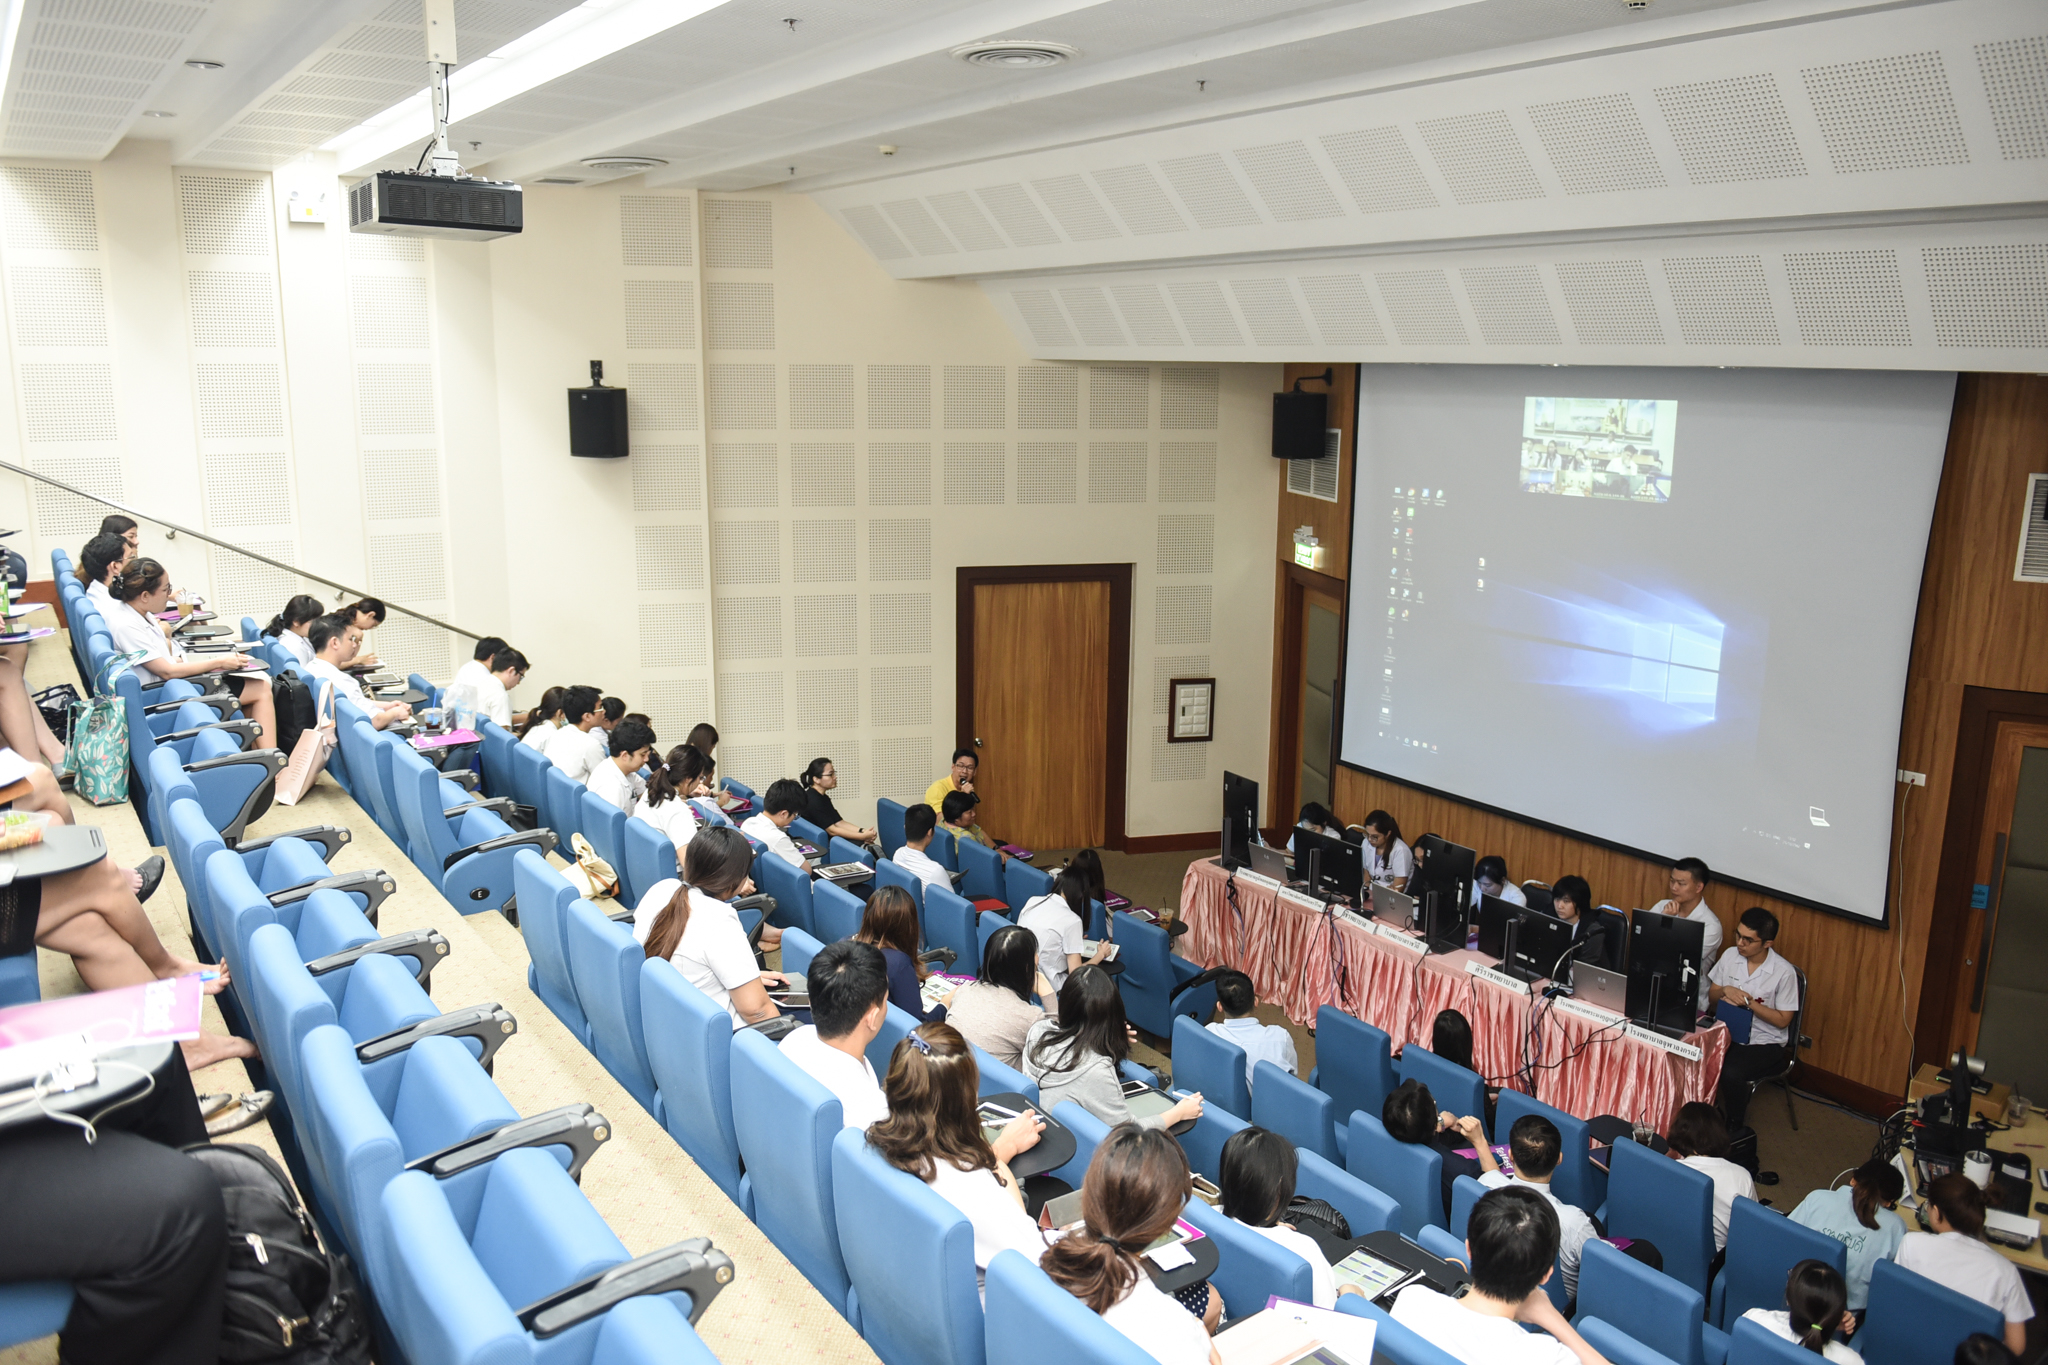 ประชุมวิชาการ Inter University Conference ประจำปีการศึกษา 2562